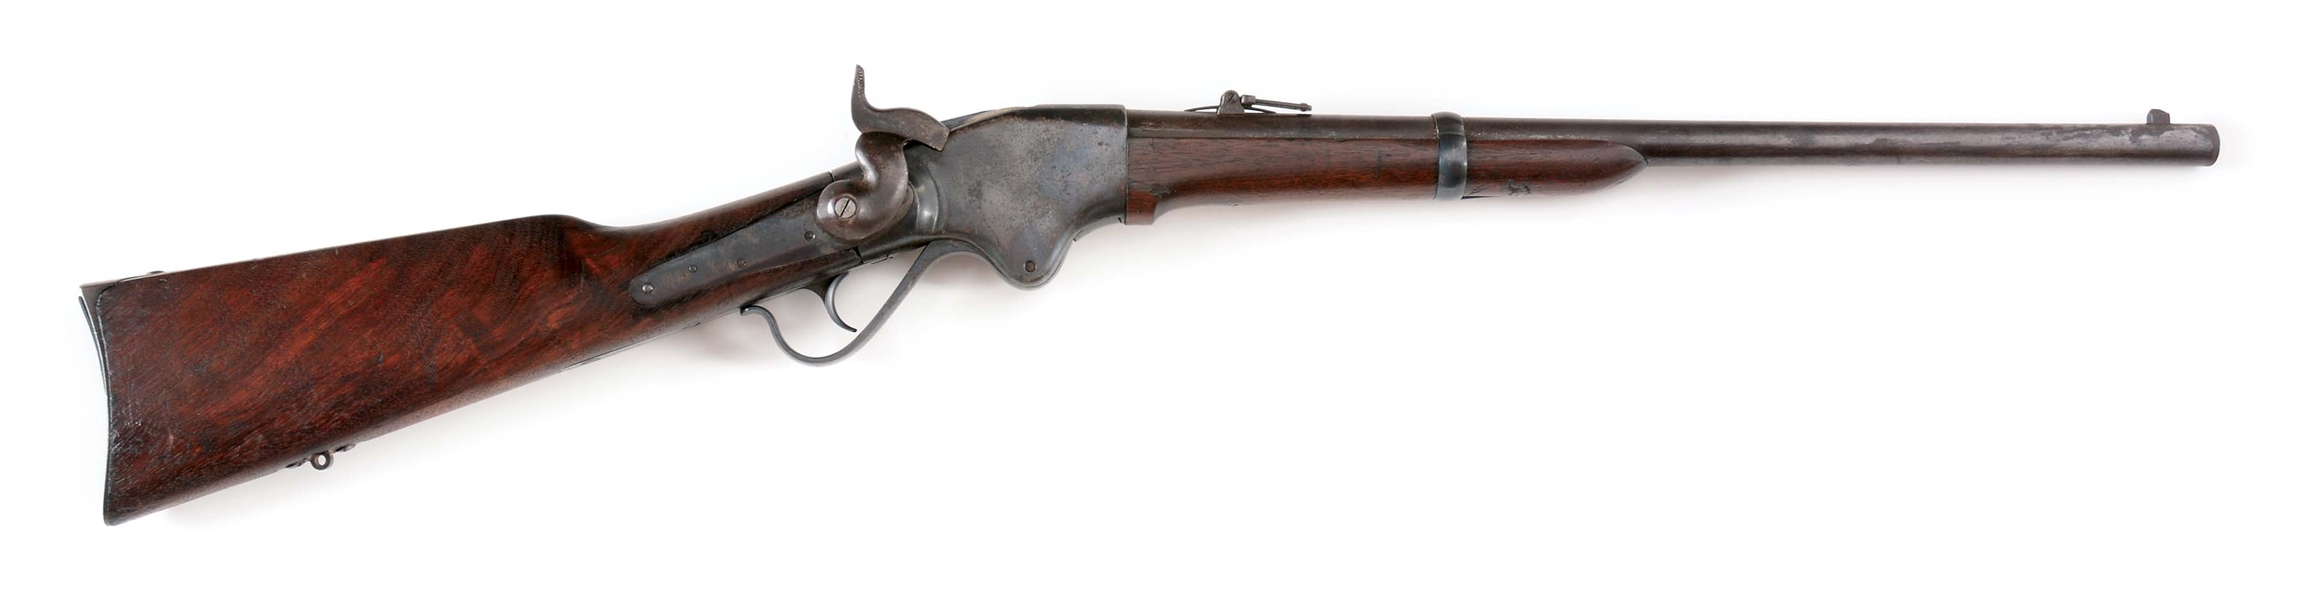 (A) CIVIL WAR SPENCER MODEL 1860 SADDLE RING CARBINE.